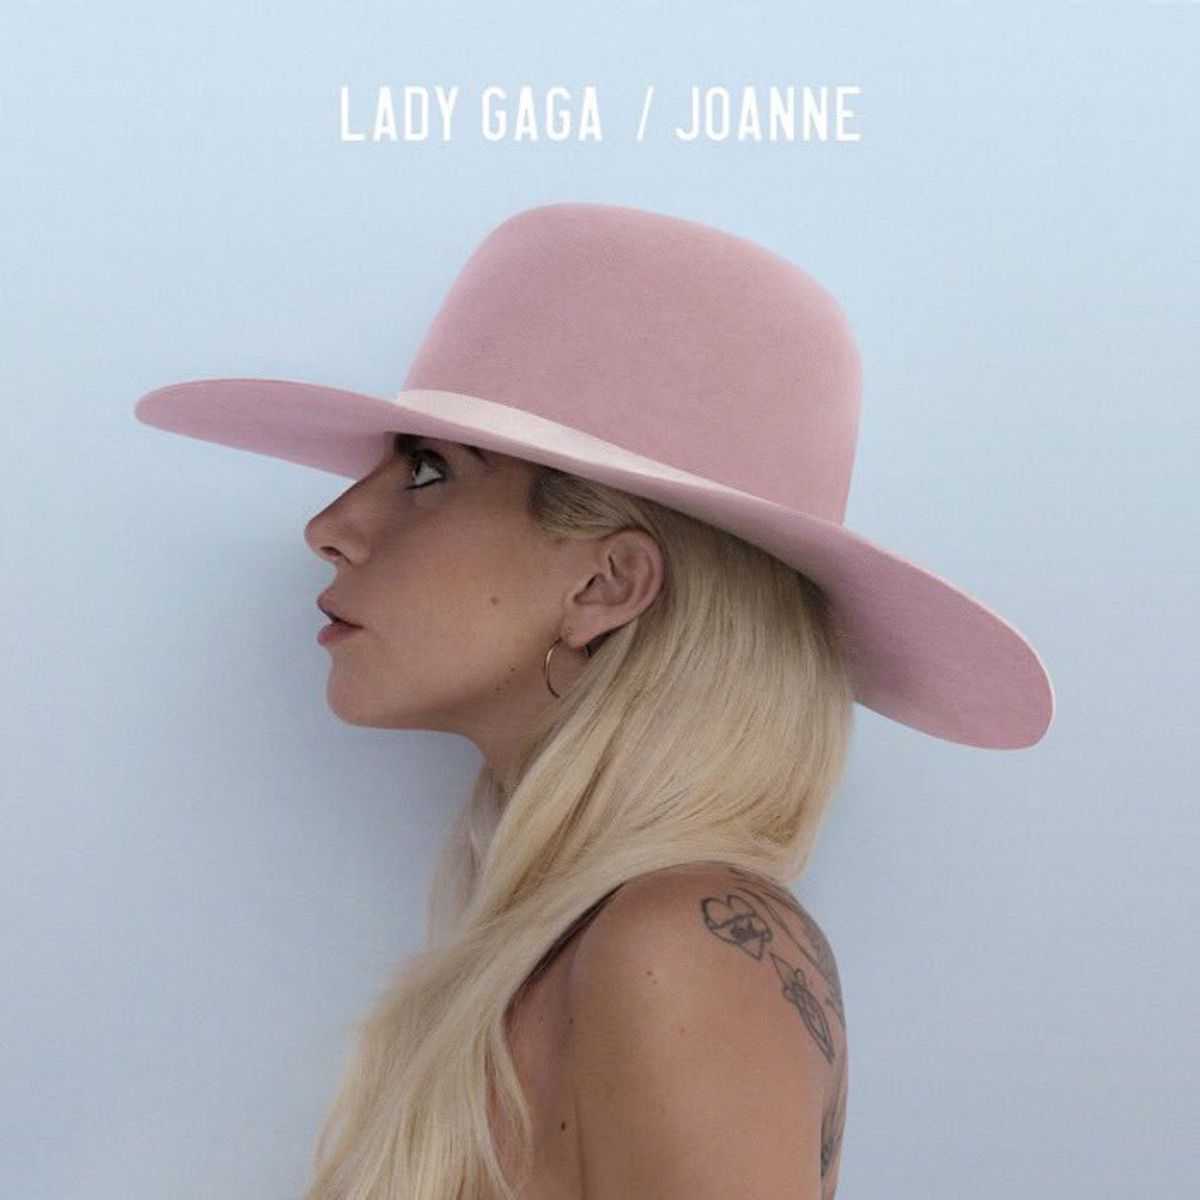 Lady Gaga's Album: Joanne